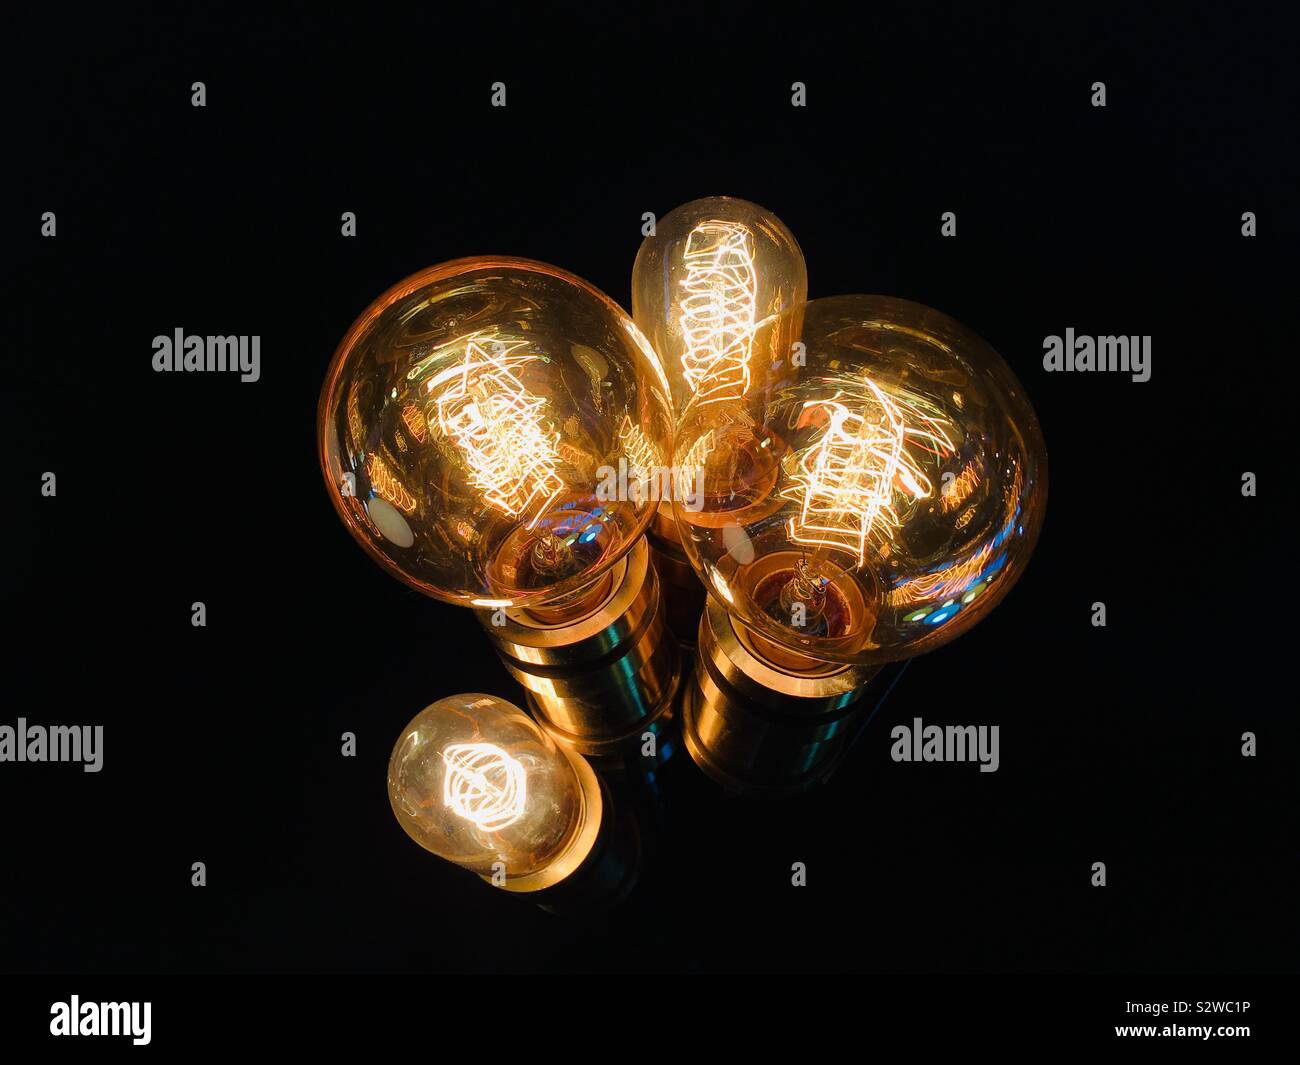 Illuminated vintage style lightbulbs Stock Photo